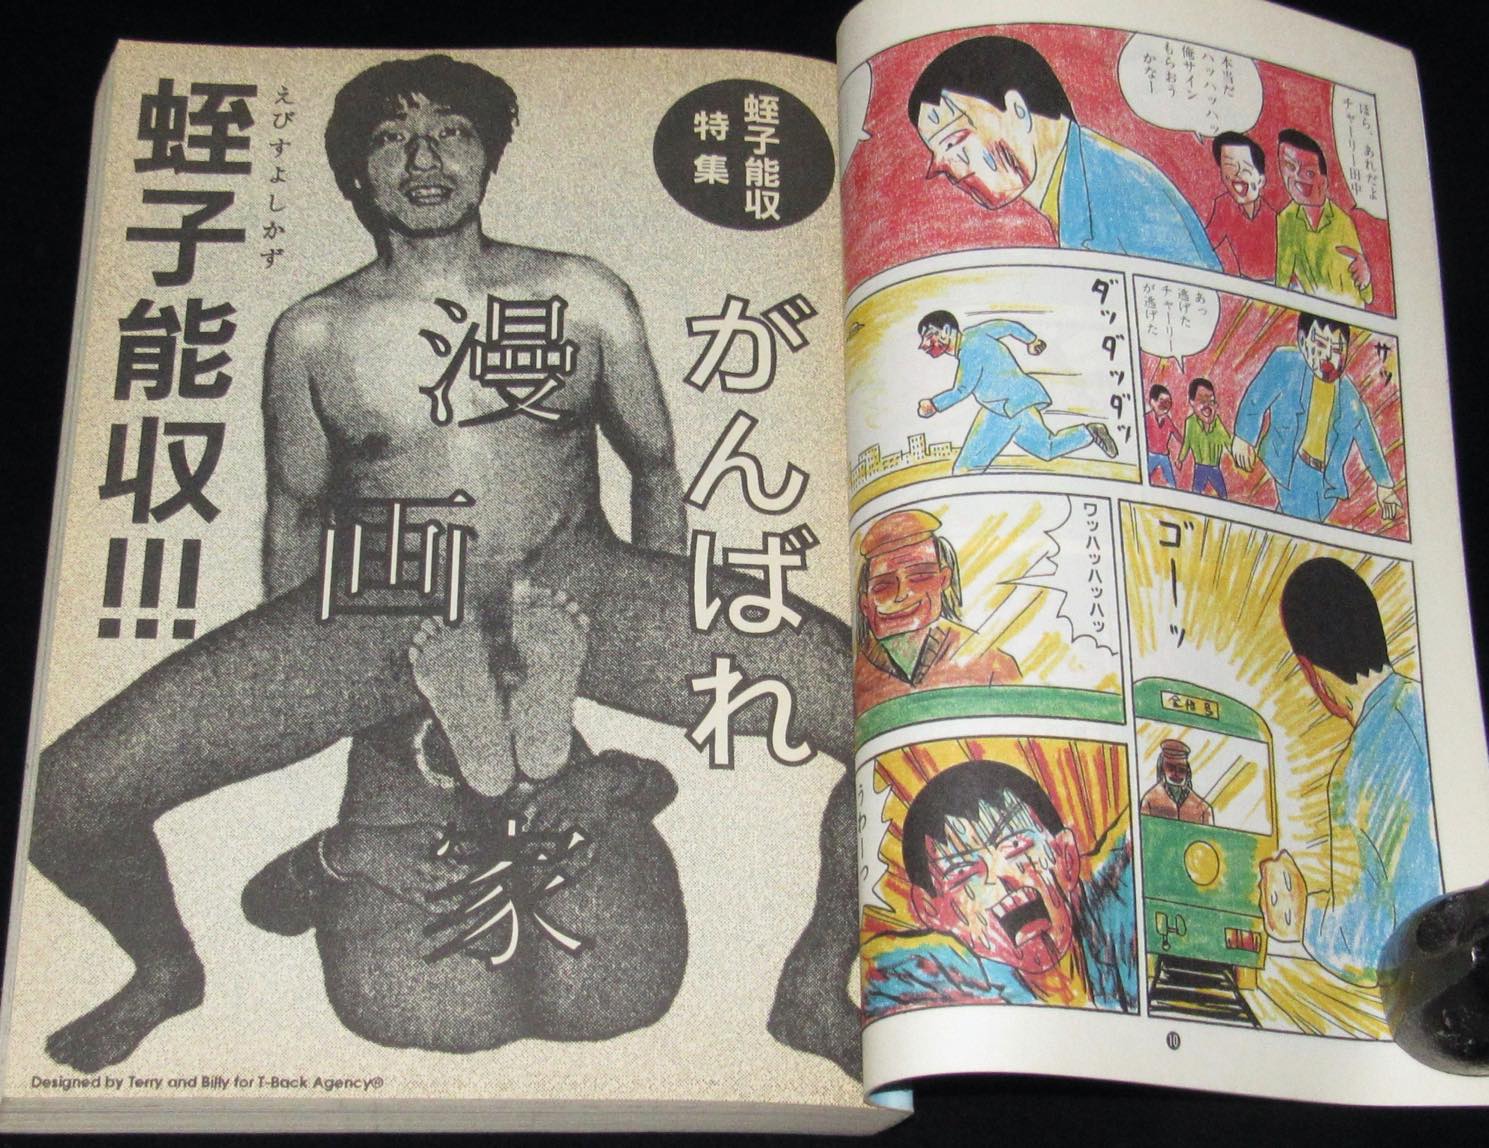 月刊漫画ガロ 1993年4月号 蛭子能収特集/花輪和一/近藤ようこ/つげ忠男 絶版漫画専門 じゃんくまうす